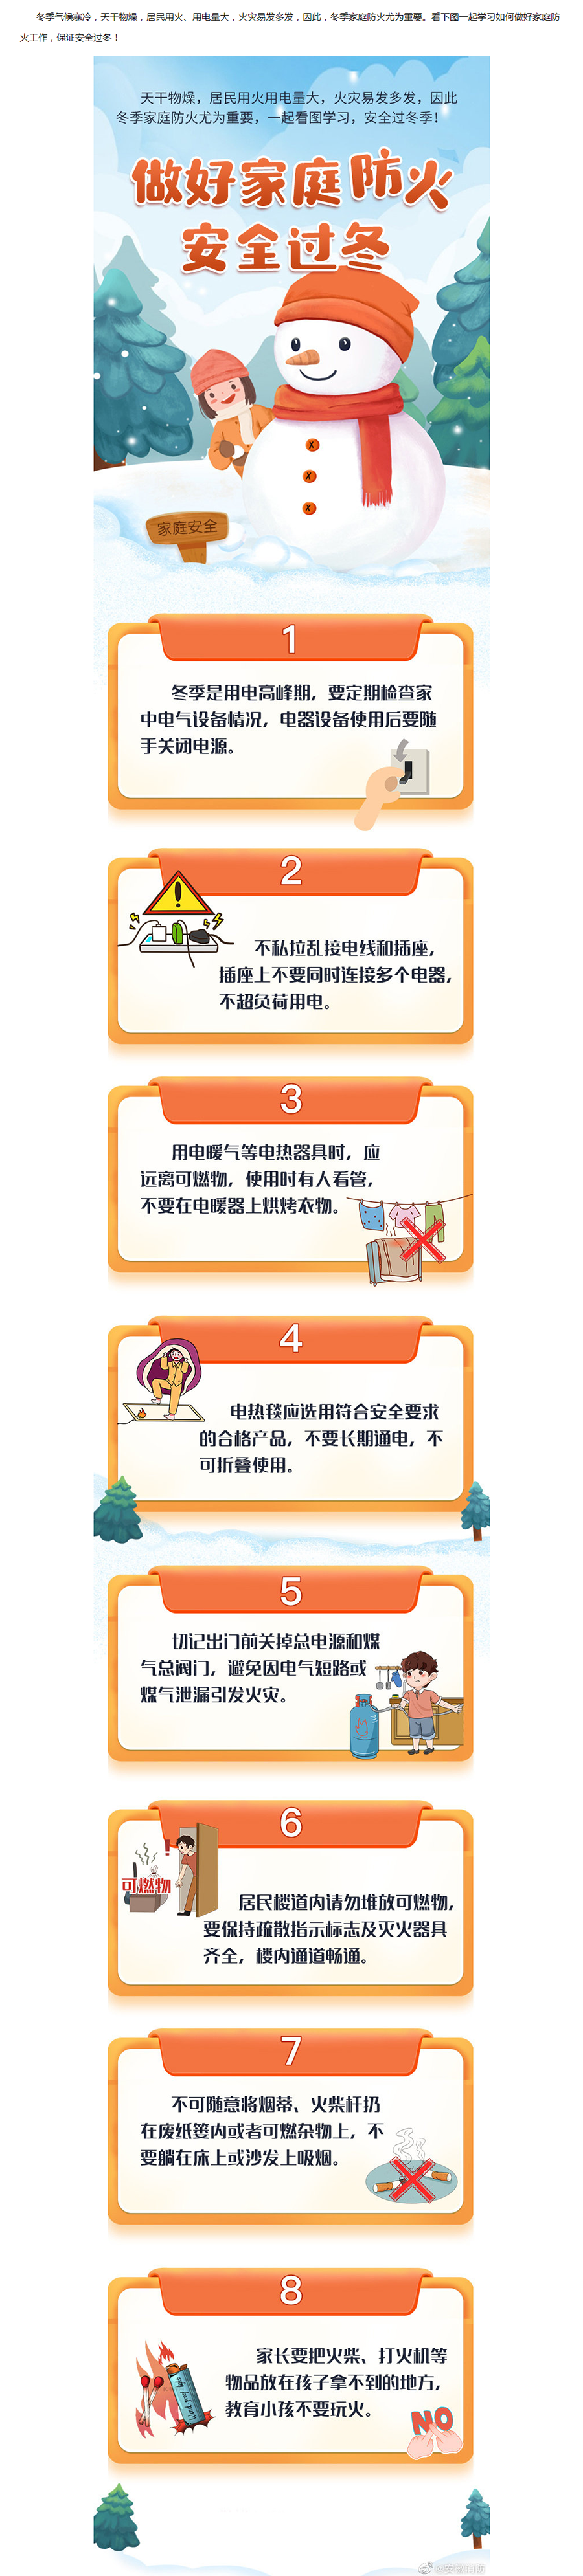 做好家庭防火 安全过冬----中华人民共和国应急管理部.jpg